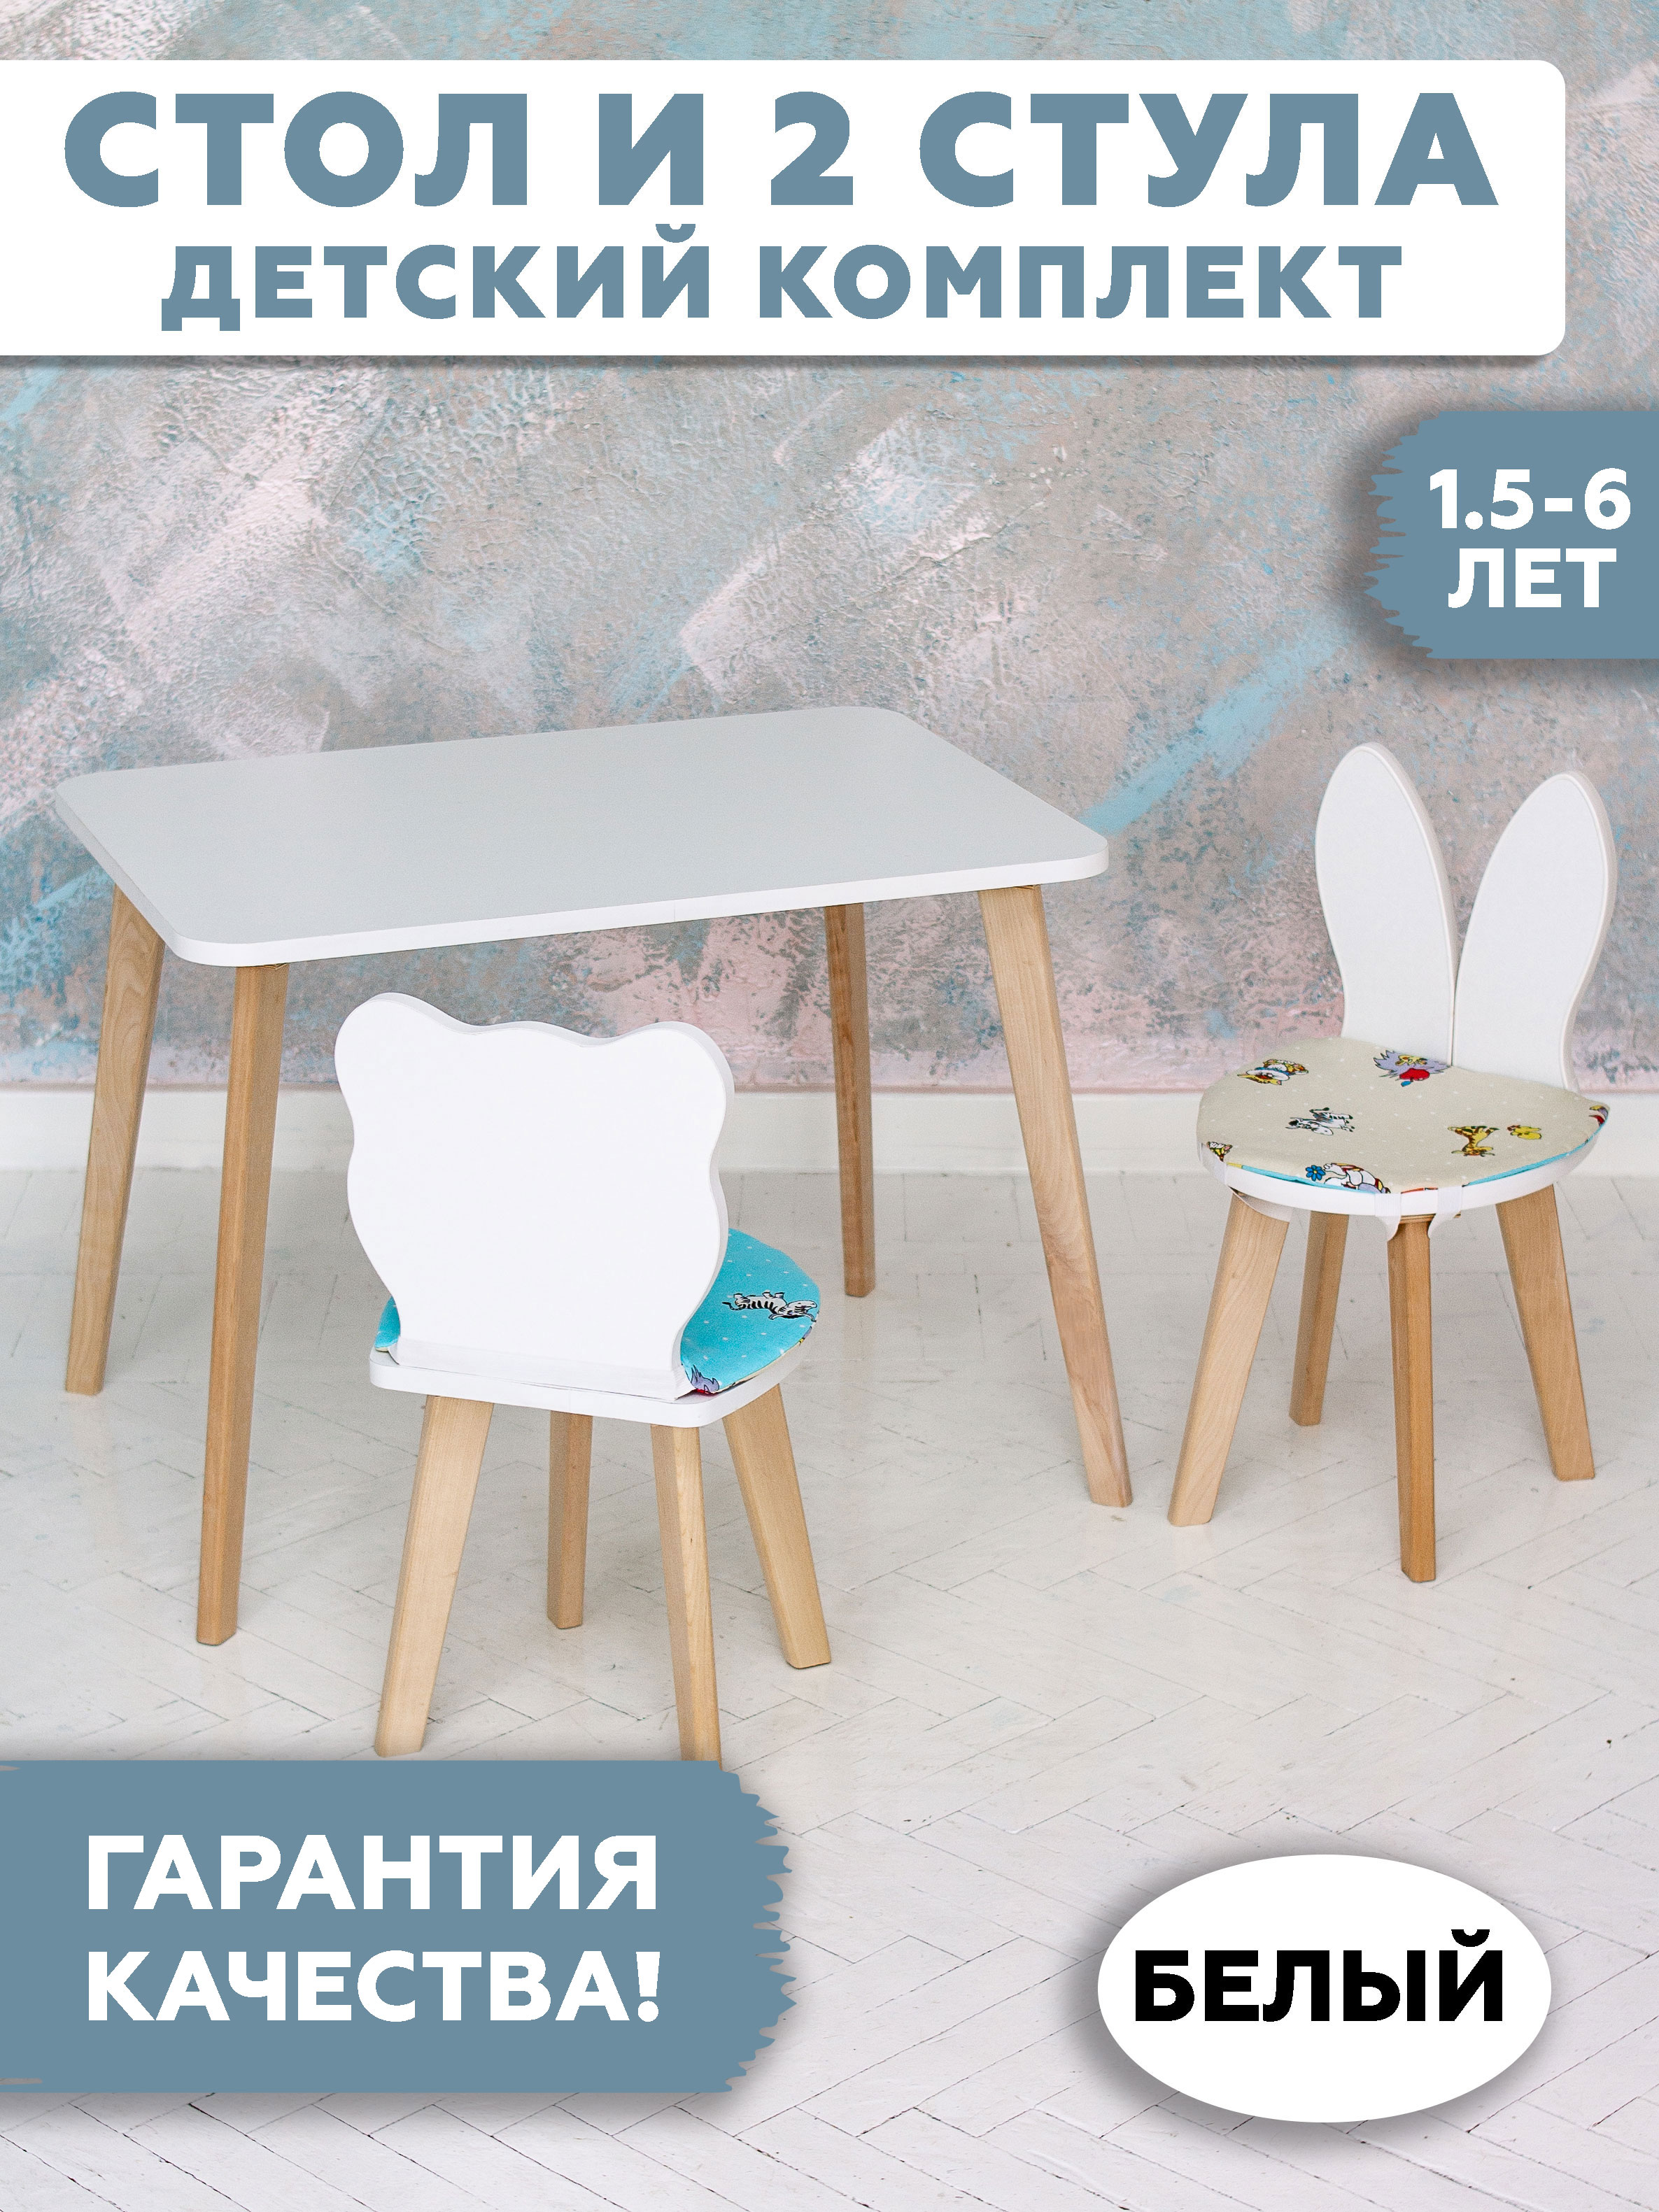 Комплект детской мебели RuLes стол прямоугольный детский и стульчики мишка и зайка 12643